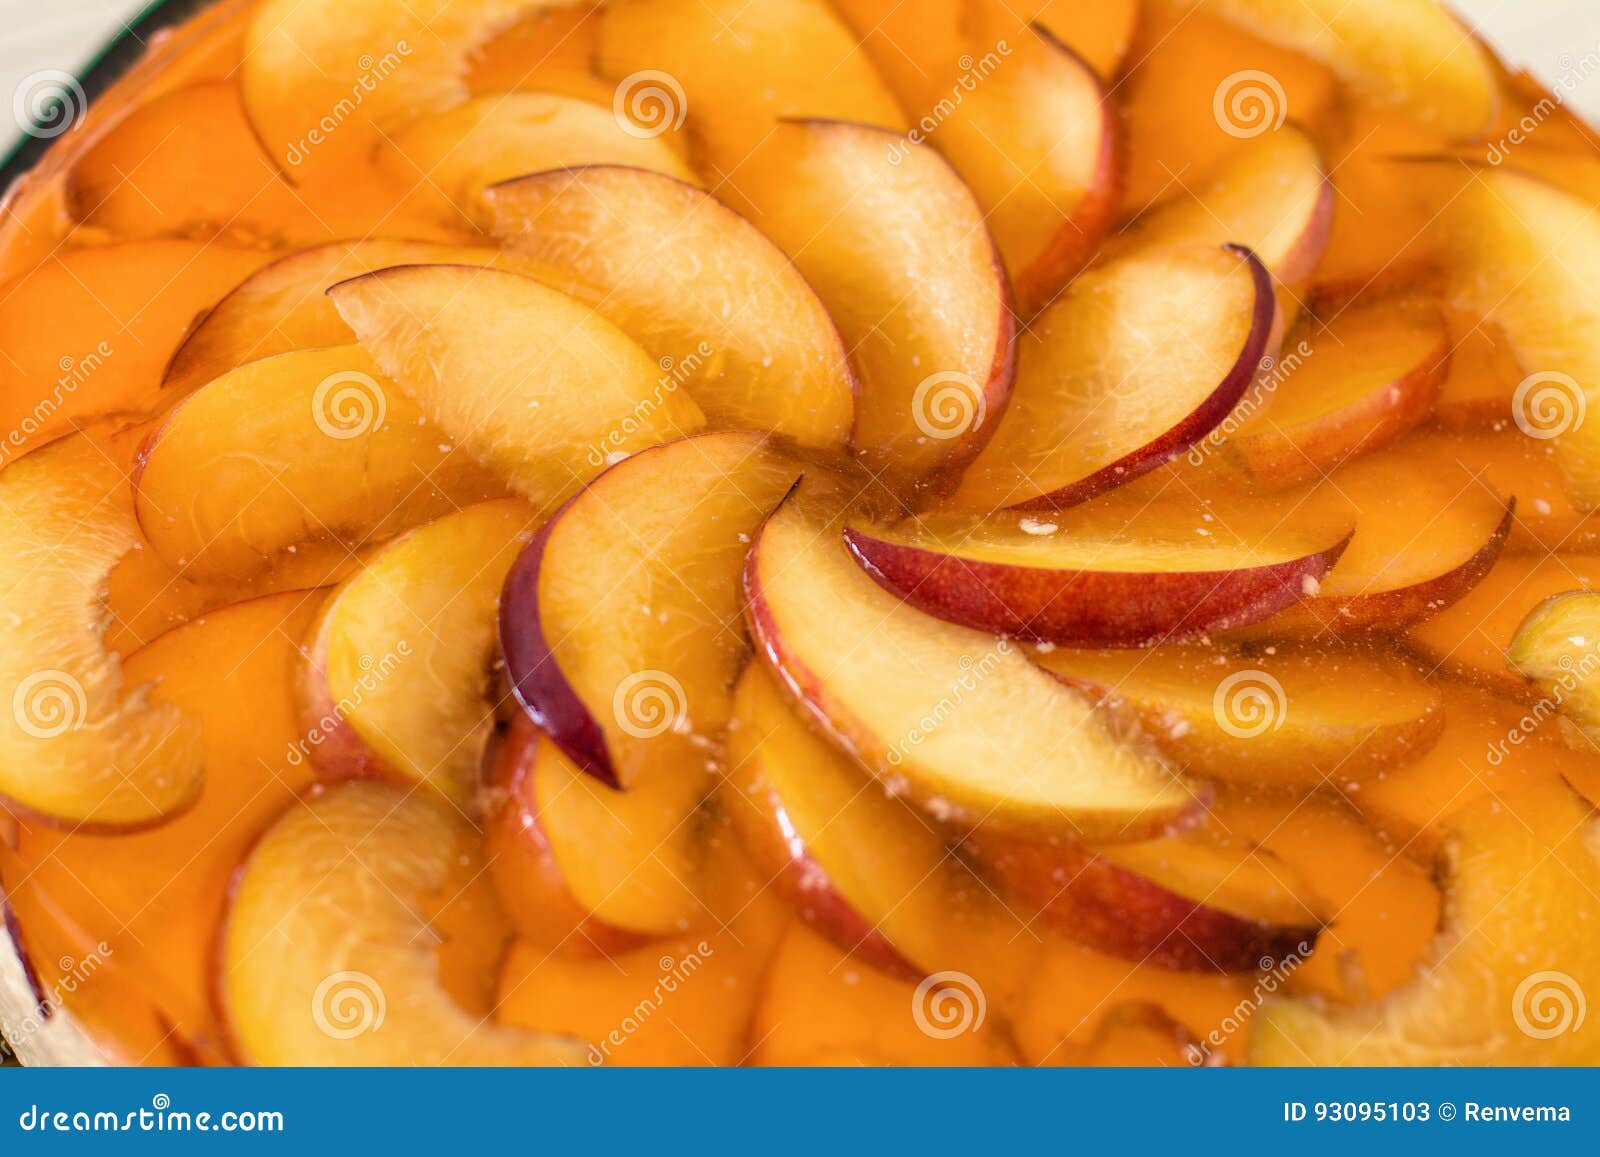 Fruchtkuchen Mit Pfirsich, Gelee Und Kremeis Stockbild - Bild von ...